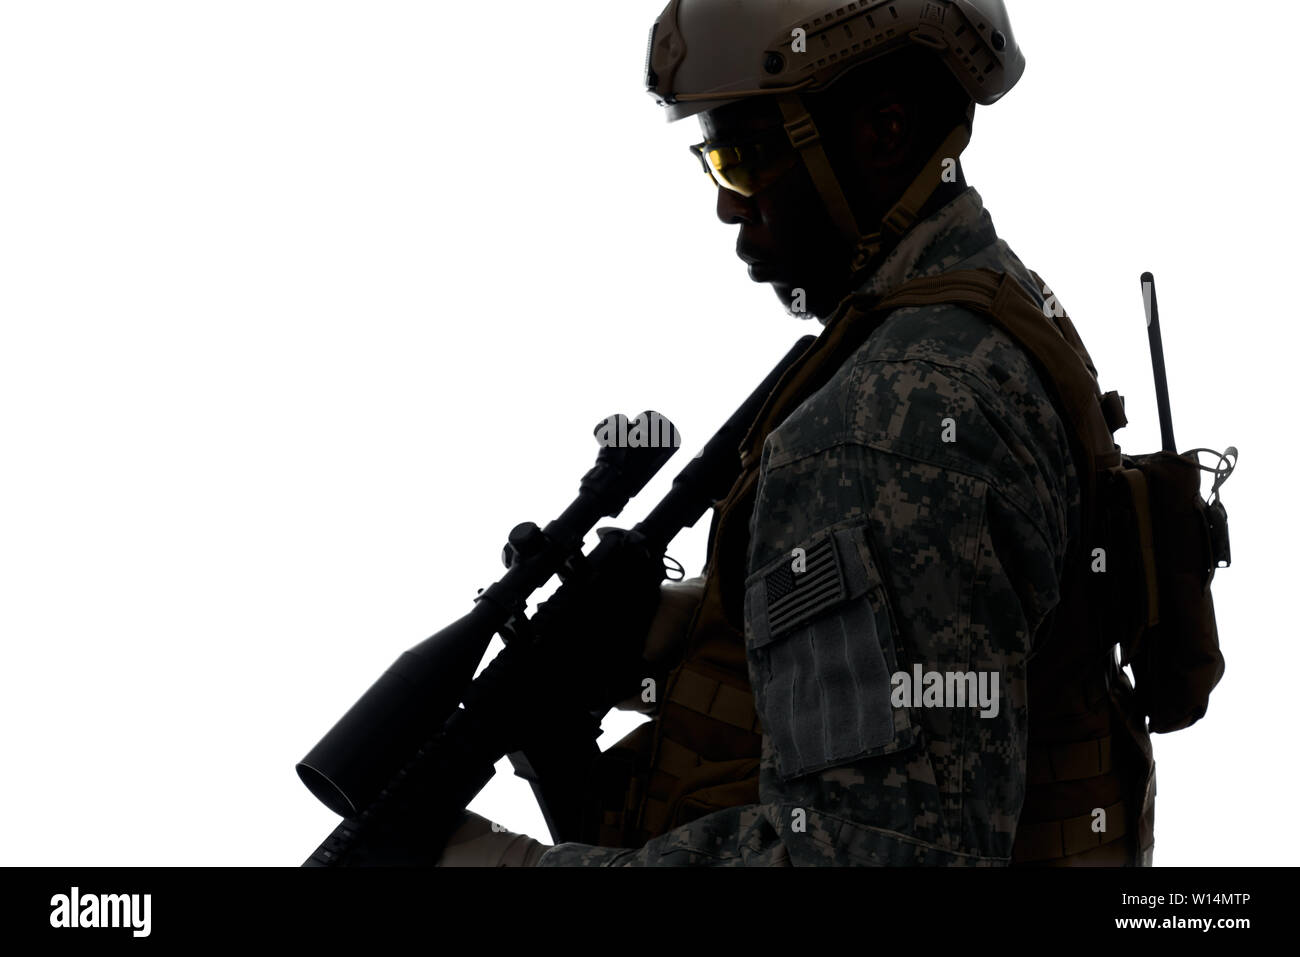 Silhouette de soldat américain professionnel de la machine avec des armes modernes. Les servir dans l'armée, le port de casque, armure et maintien de la position. Concept de w Banque D'Images